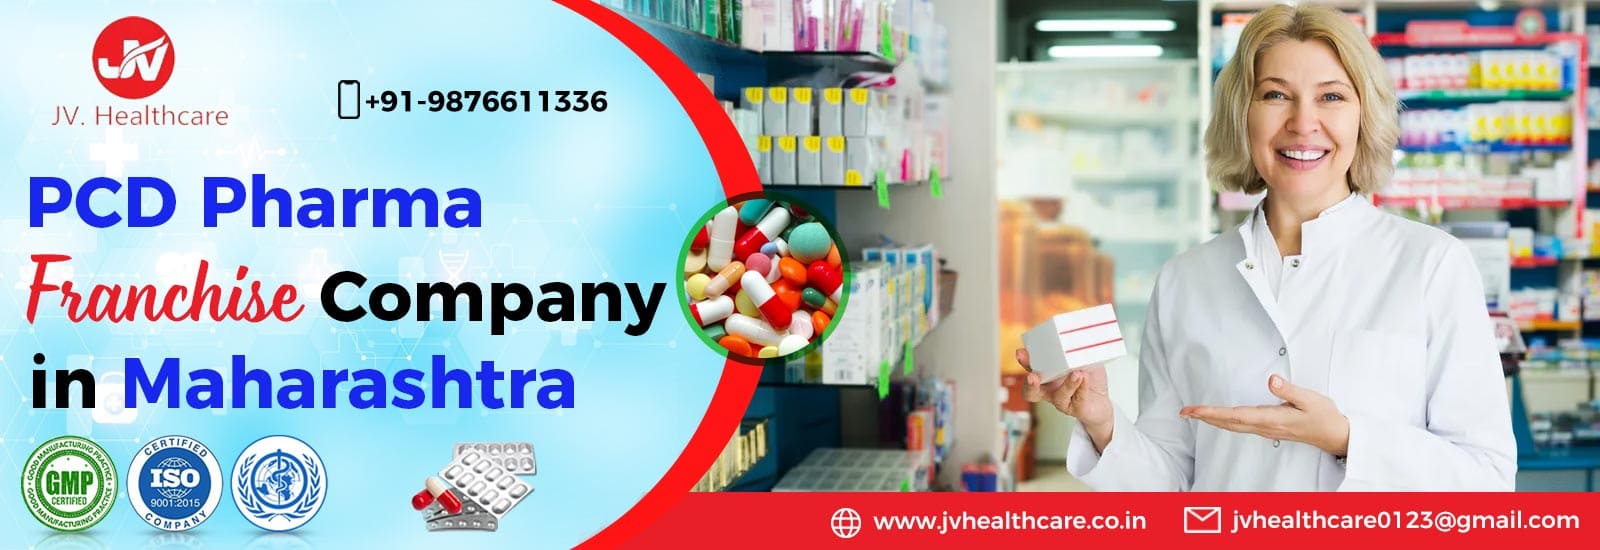 Best PCD Pharma Franchise Company in Maharashtra